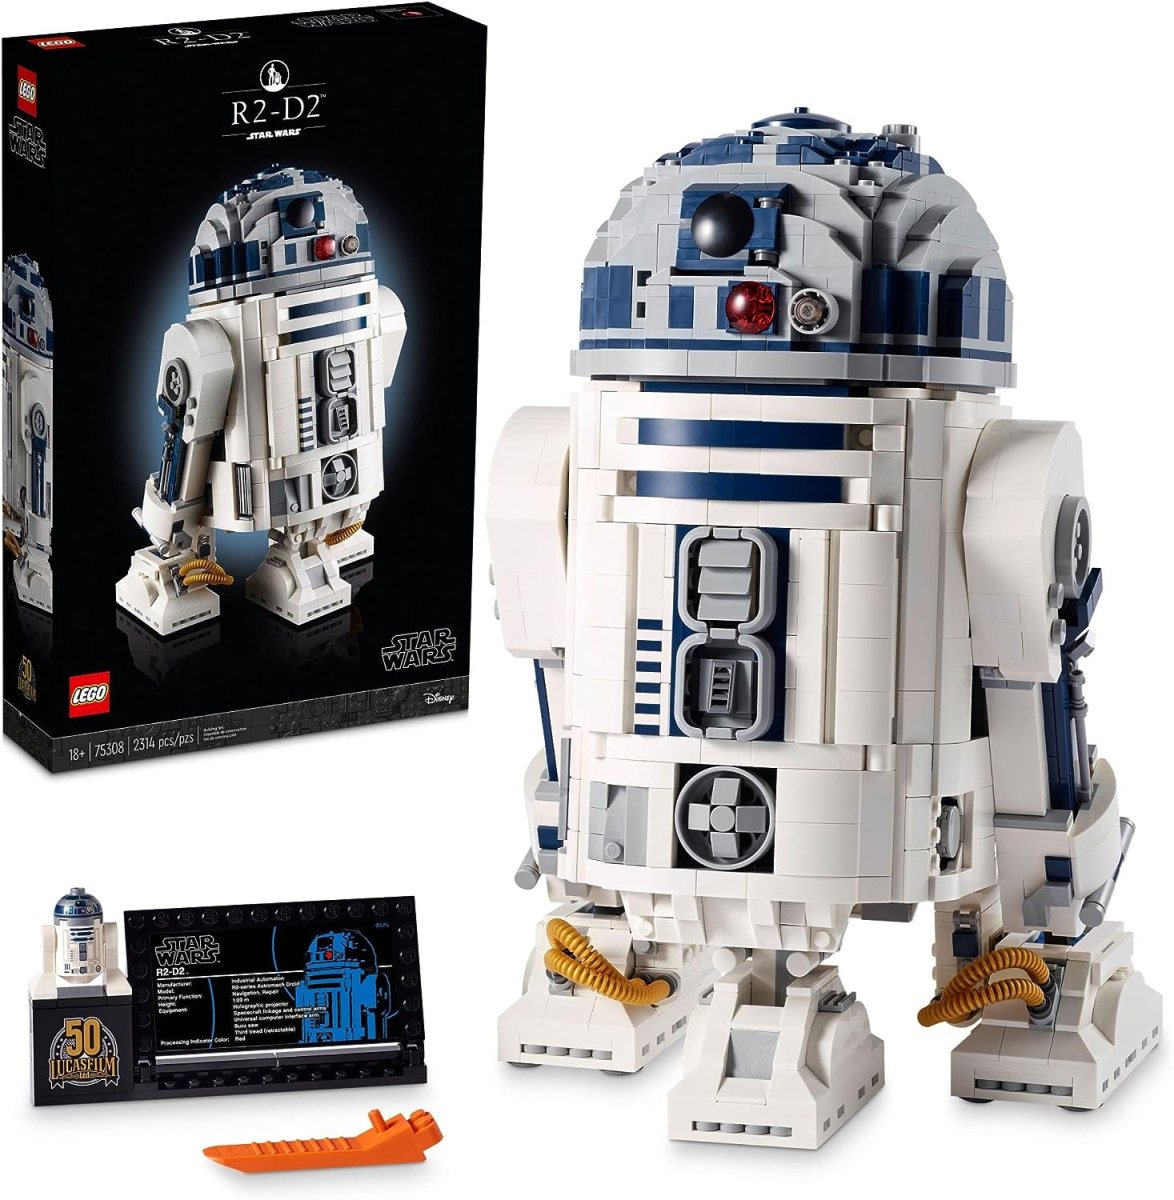 LEGO R2-D2 Star Wars droid